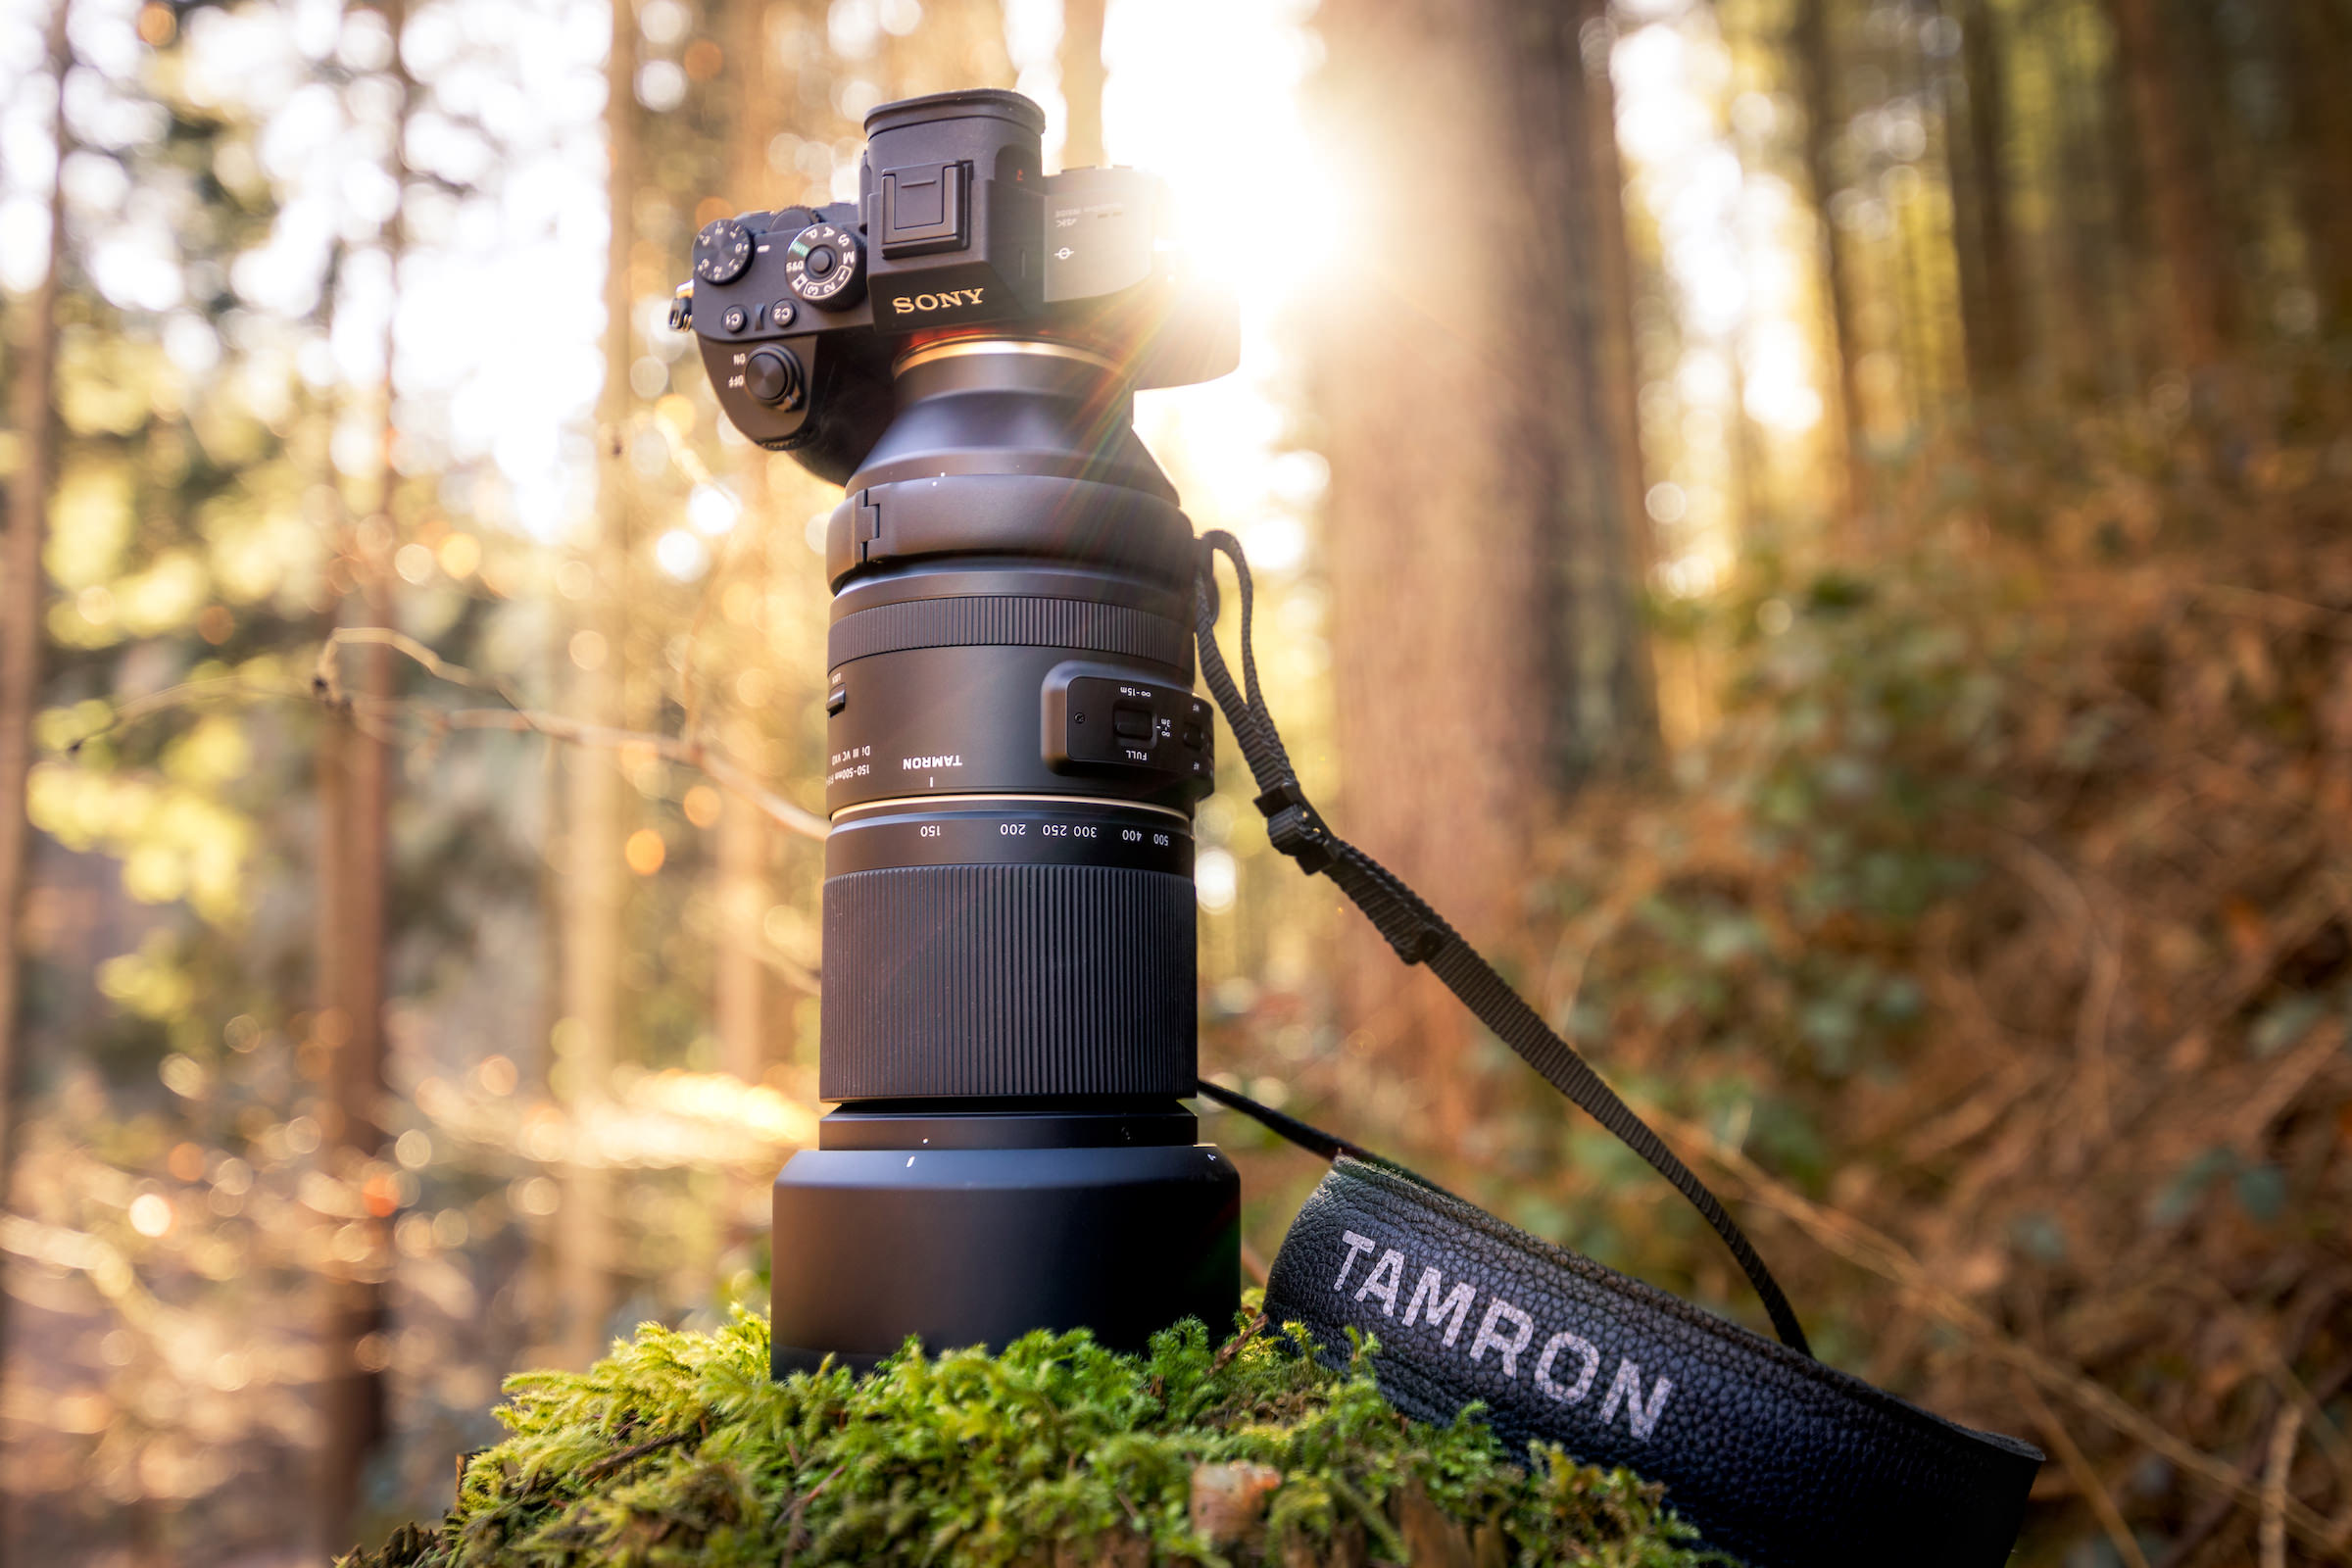 Tamron ra mắt ống kính 11-20mm F2.8 cho APS-C, ống kính 150-500mm F5-6.7 cho full frame